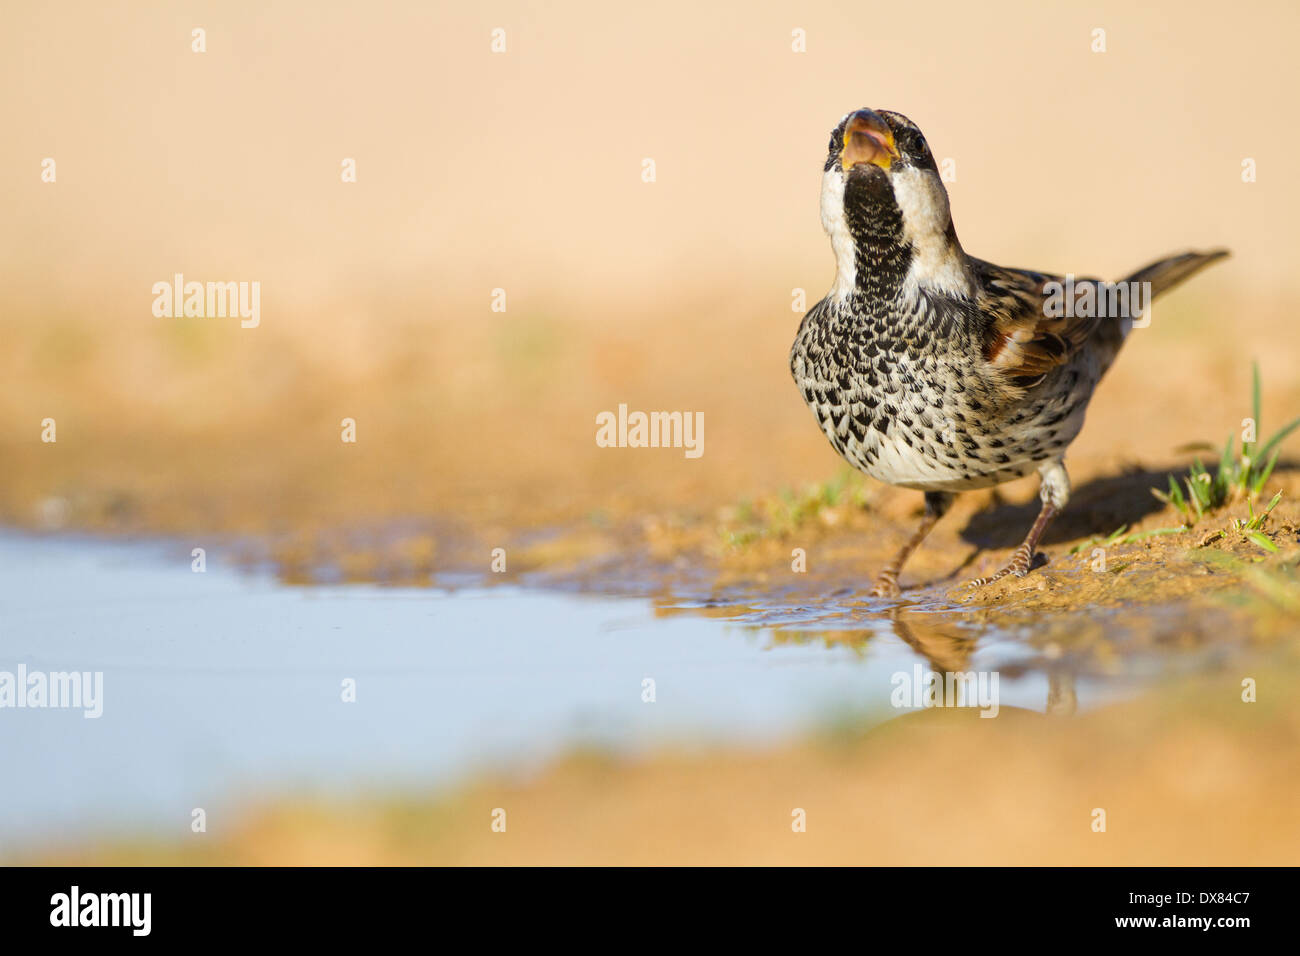 Passera sarda (Passer hispaniolensis) nelle vicinanze di una pozza d'acqua nel deserto, Foto Stock